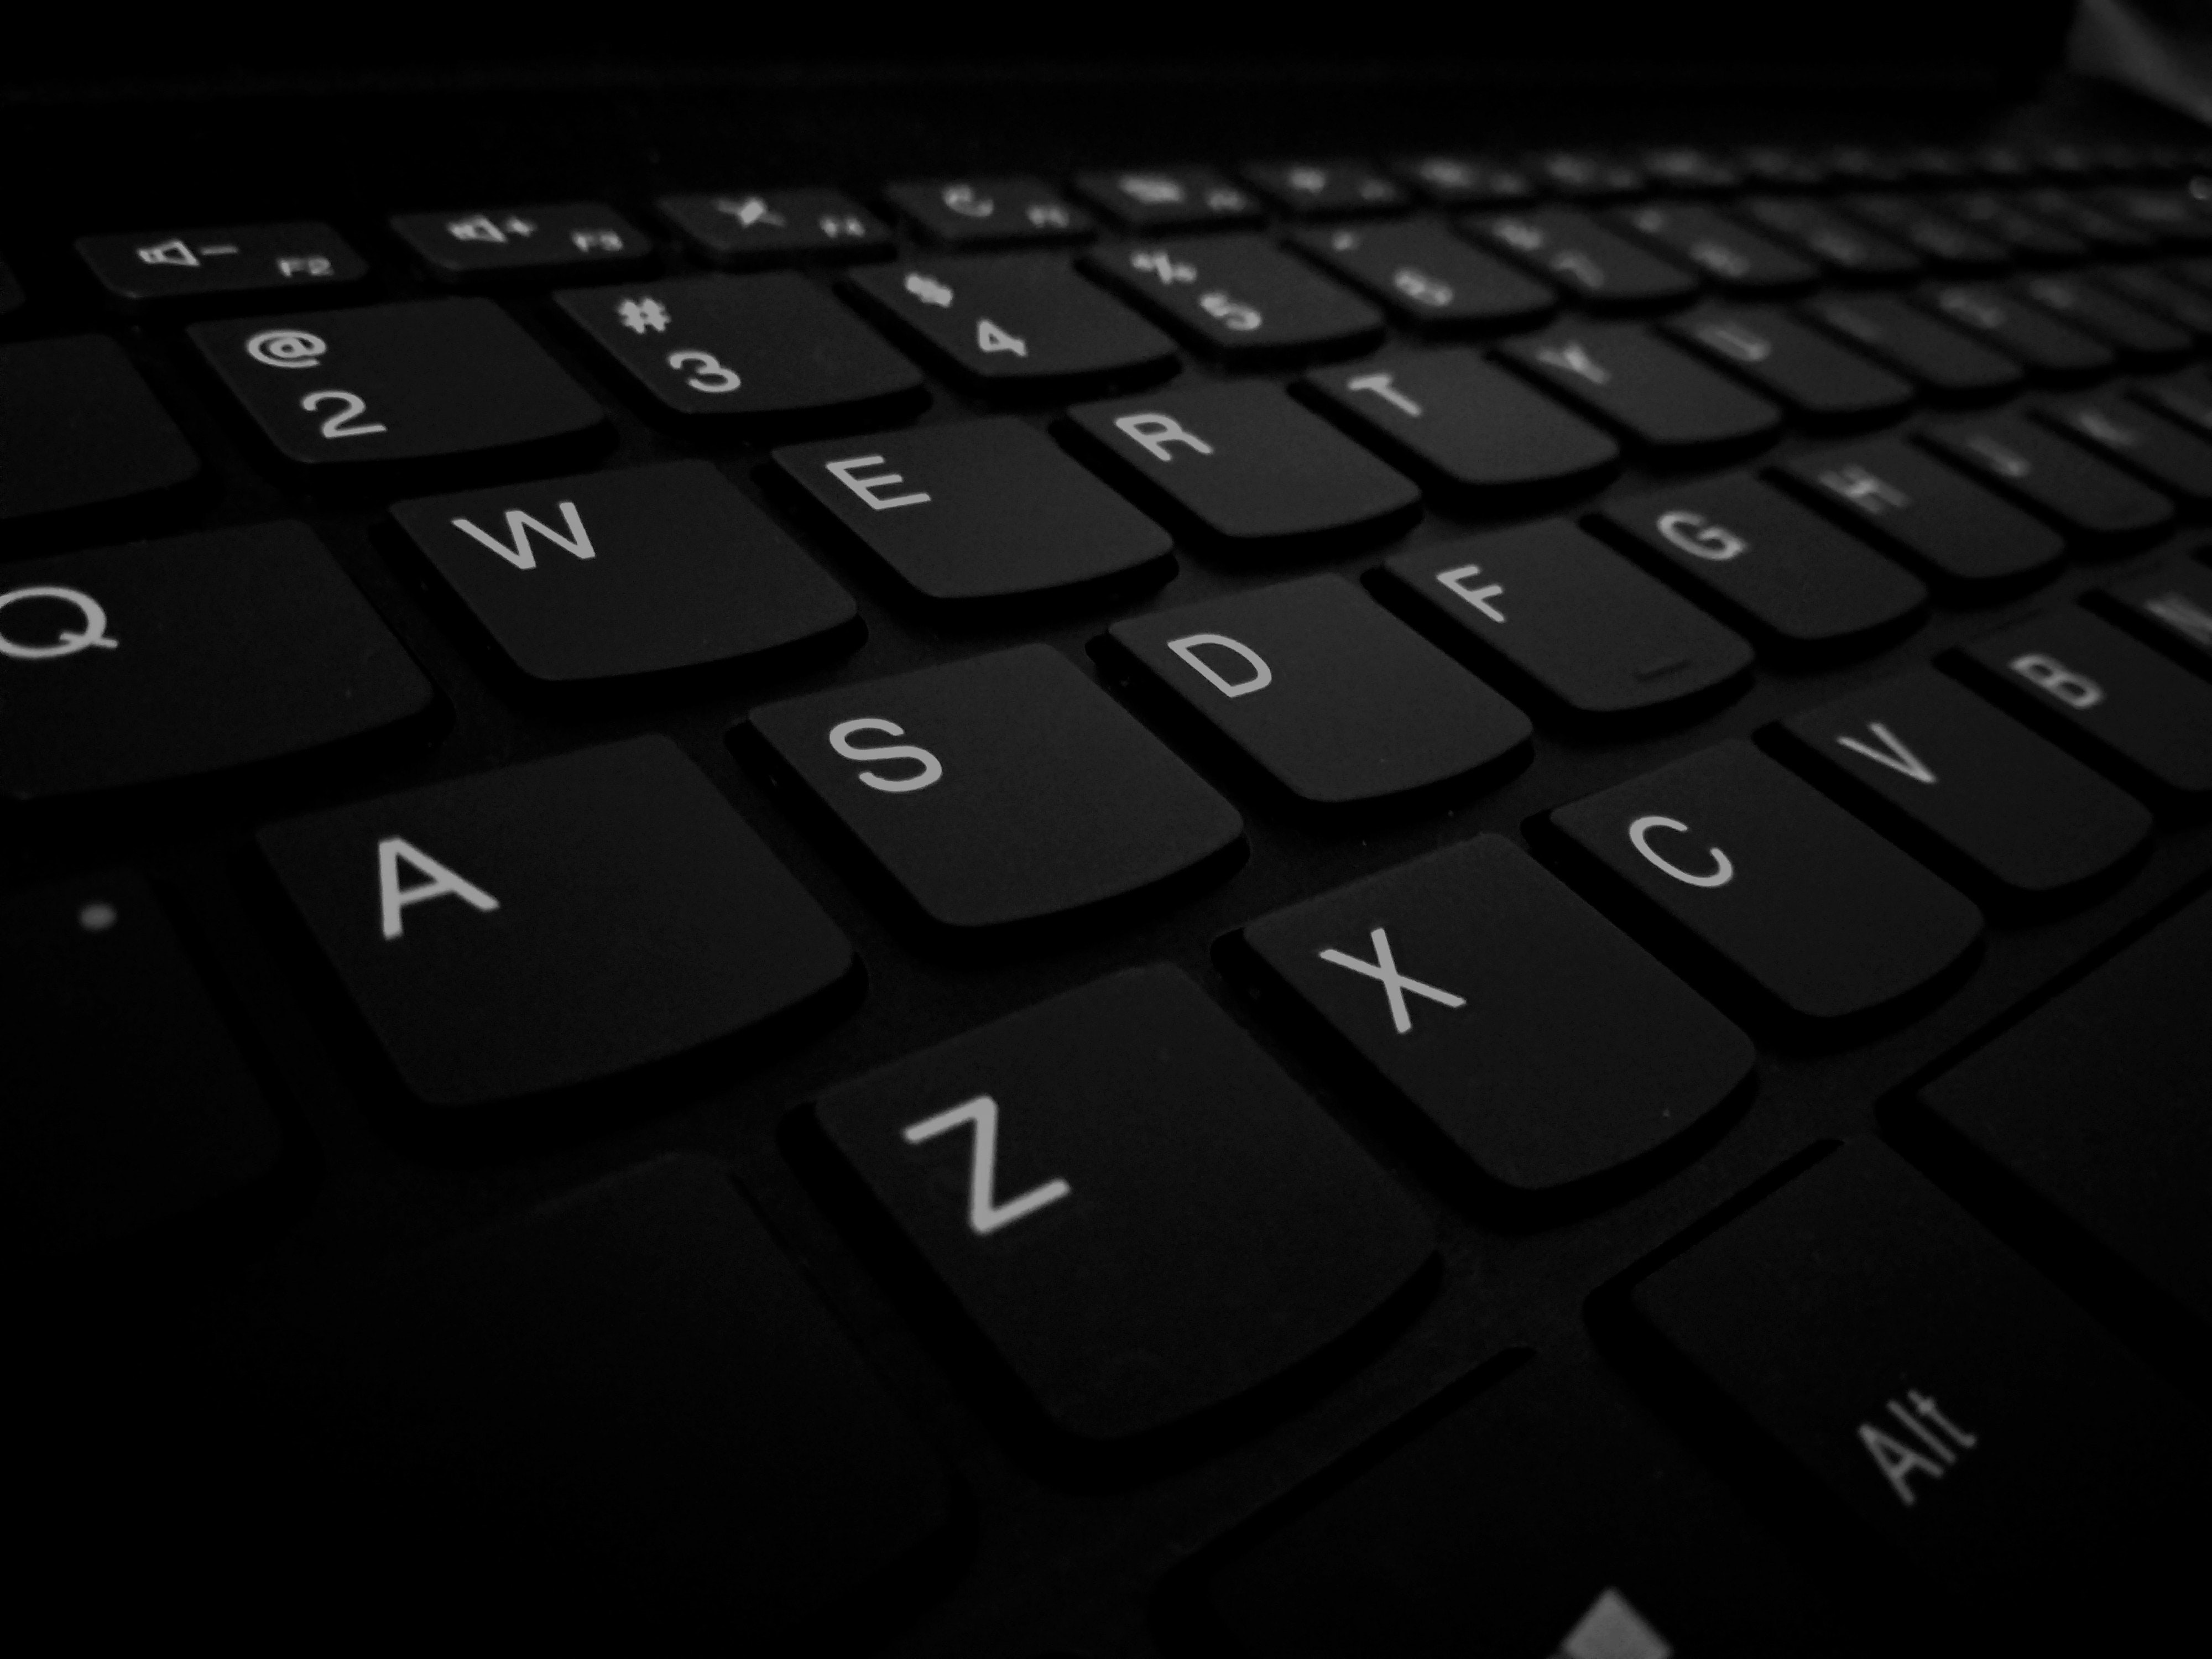 Cualquier teclado requiere de limpieza de mantenimiento regular, dependiendo de la frecuencia de su uso (Crédito: pixbay)